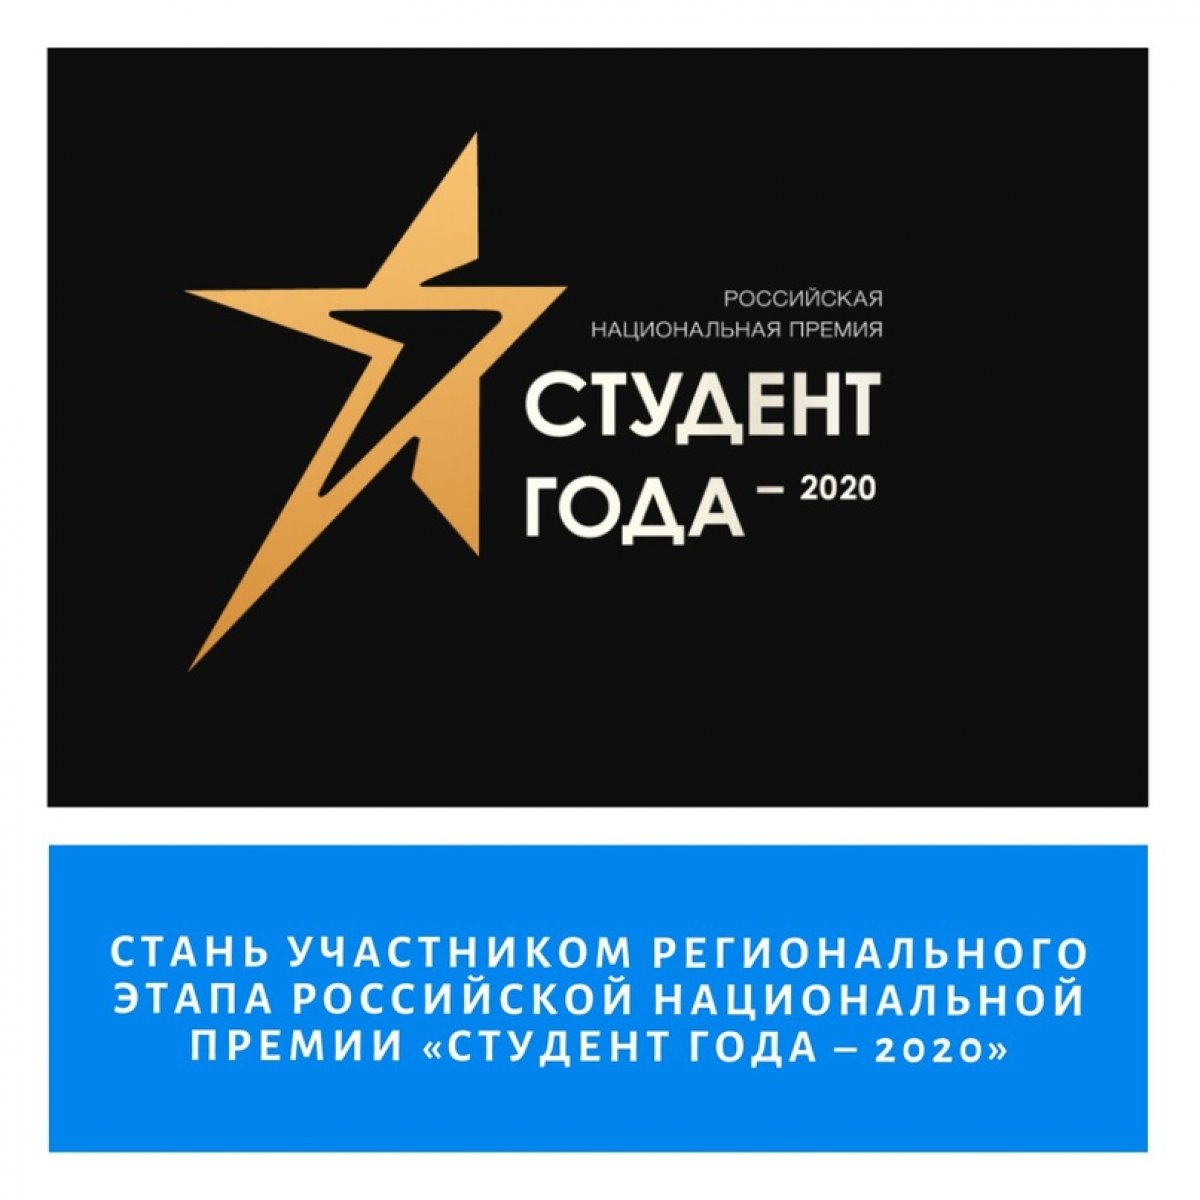 Российская национальная премия "Студент года" - уникальный конкурсный и образовательный проект для обучающихся образовательных организаций, имеющих особые достижения в учебной, научной, спортивной, творческой и общественной жизни